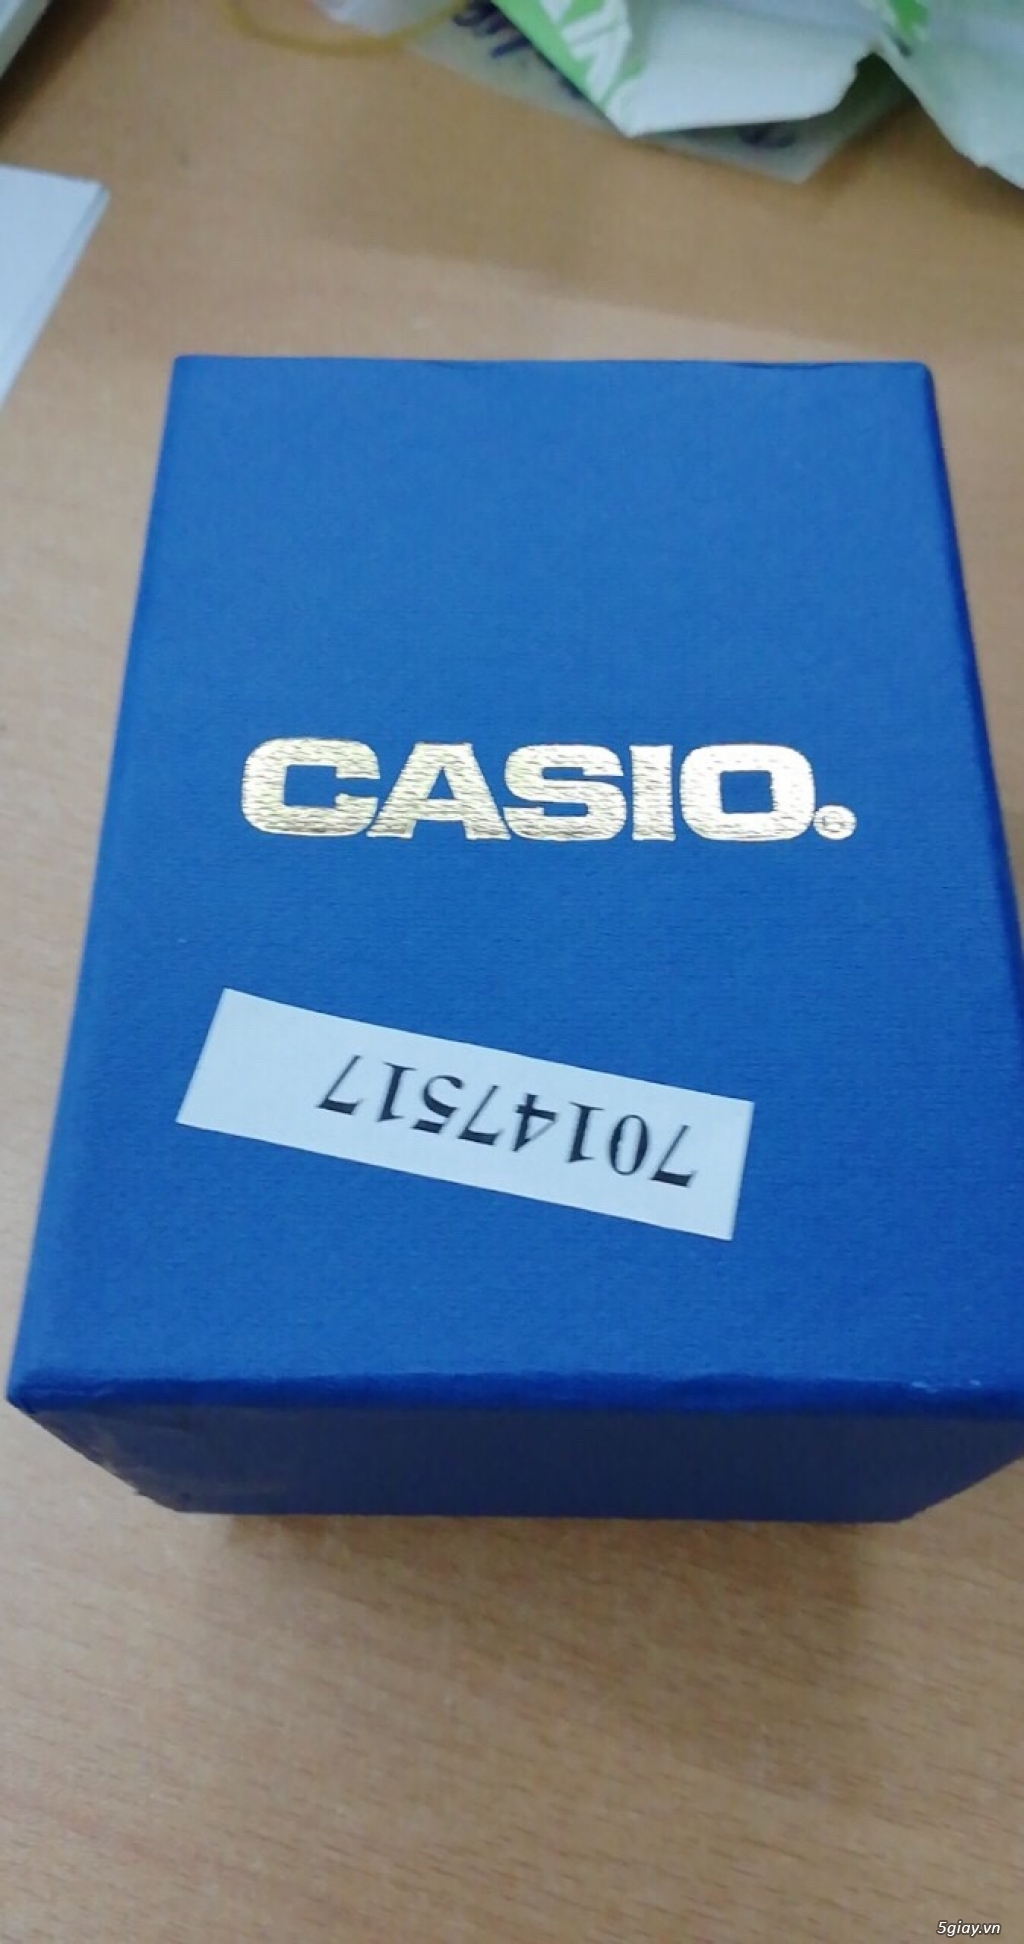 Đồng hồ Casio MQ-38-7A chính hãng, mới 100% End: 23h 13/10/19